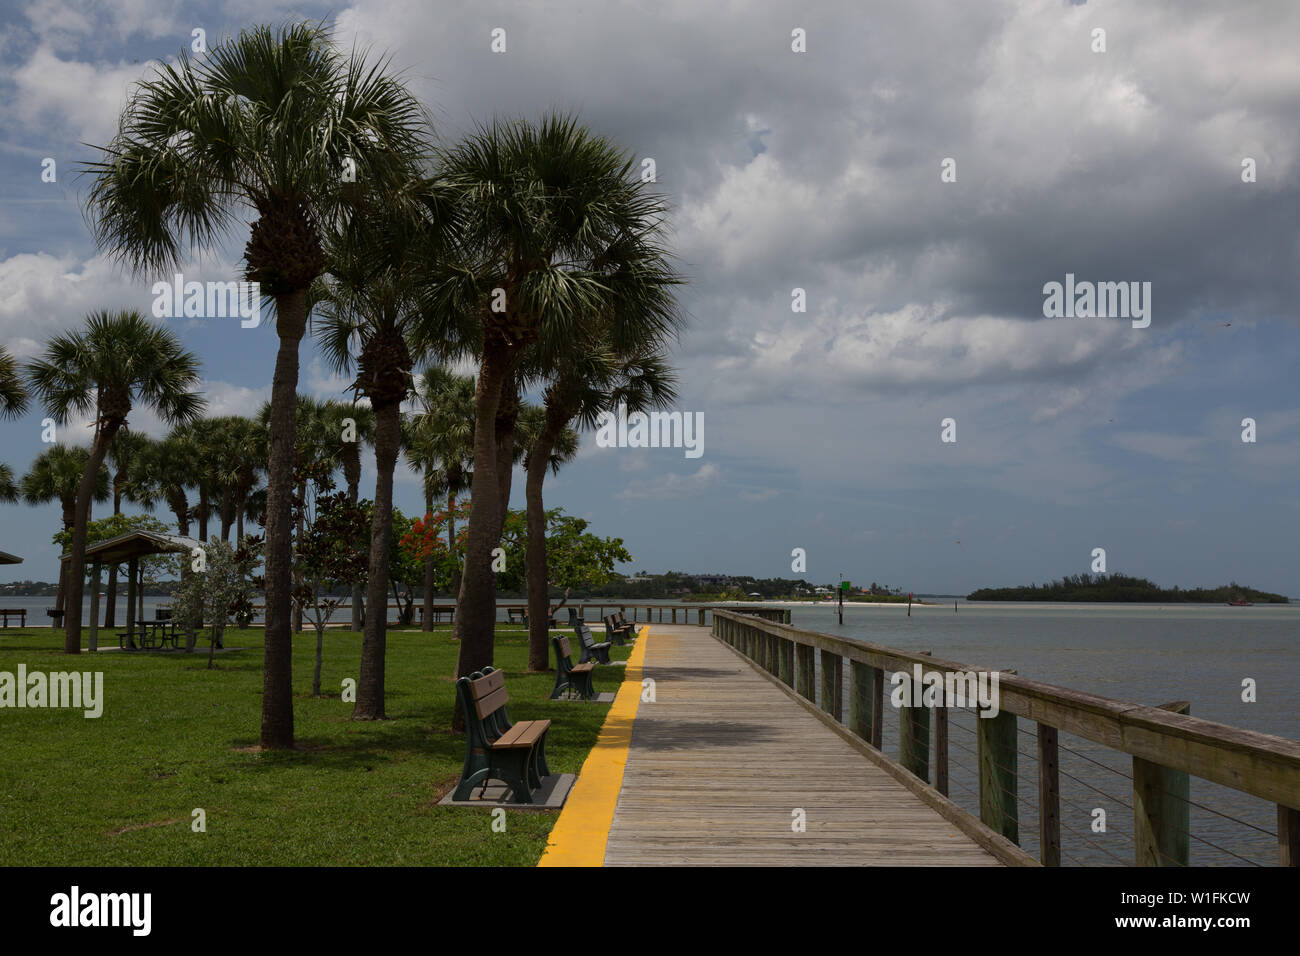 Una passerella sul lungomare separa le palme dalle acque del fiume St Lucie e dalla tasca Manatee al Sandsprit Park, Port Salerno, Florida, USA. Foto Stock